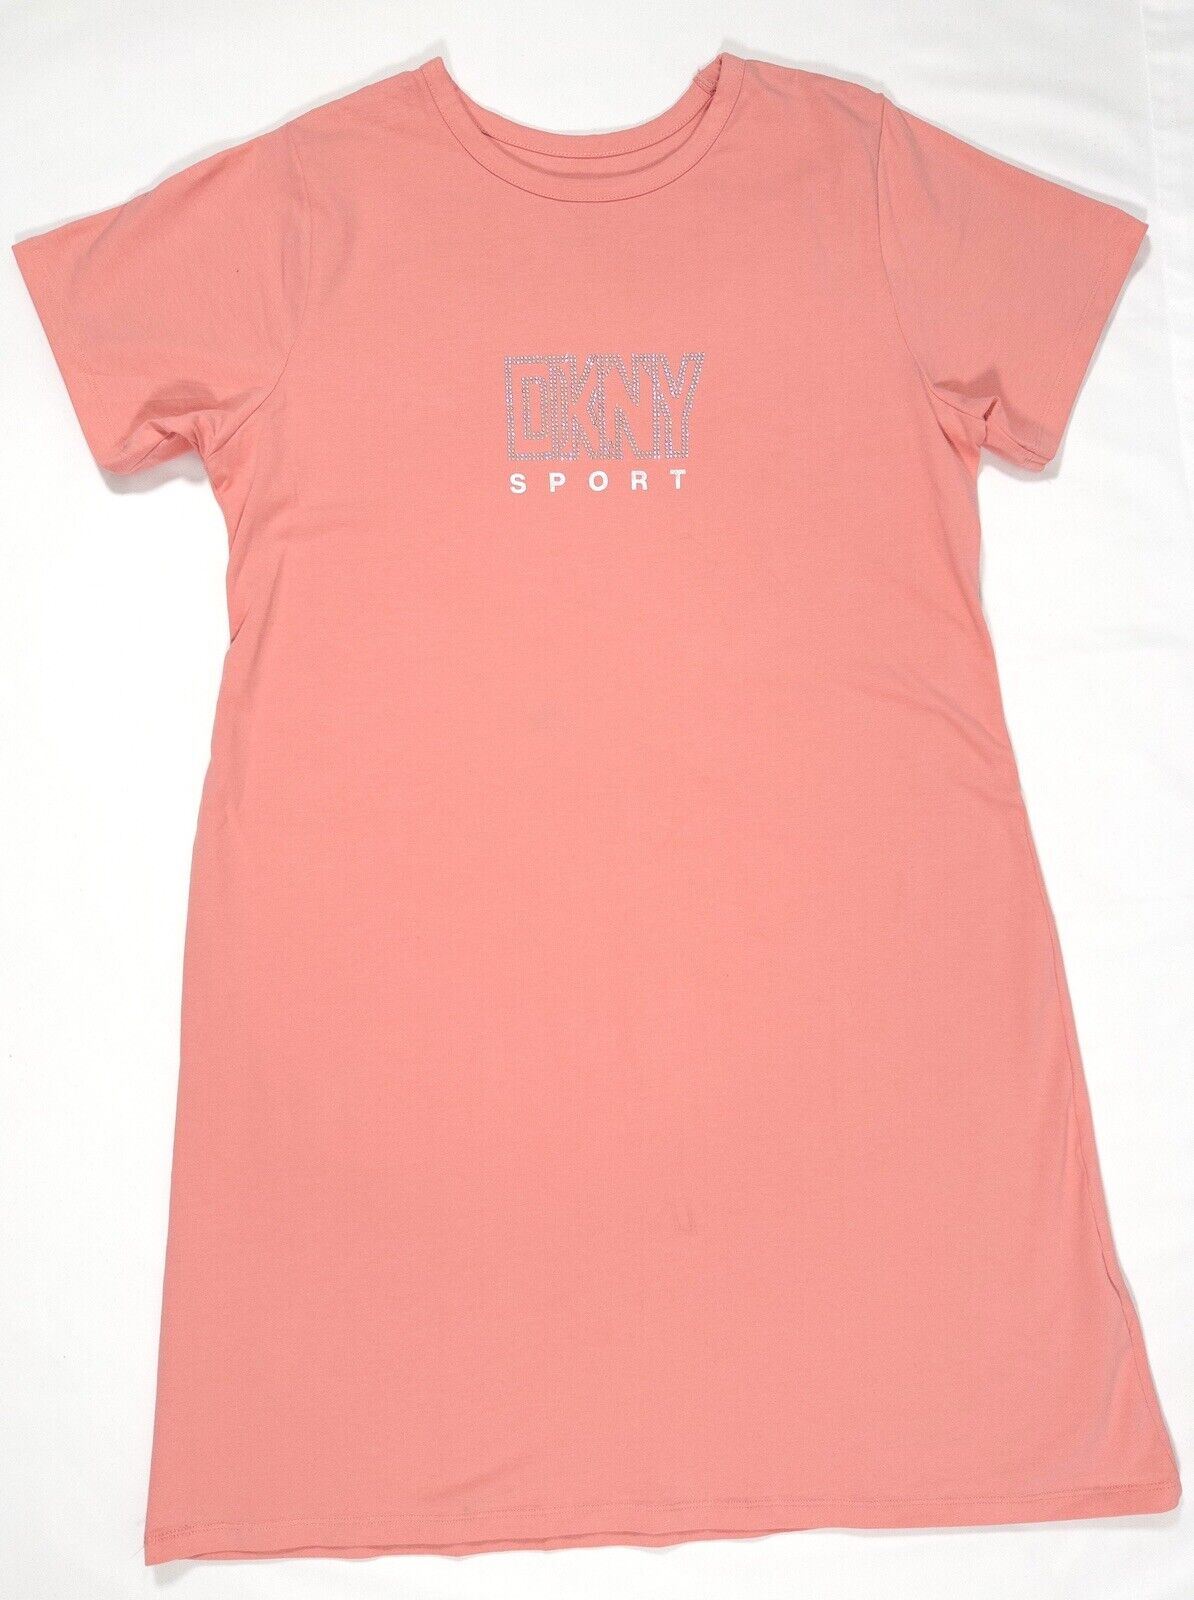 DKNY Sport Women's Pink T-Shirt Dress Short Size UK 16